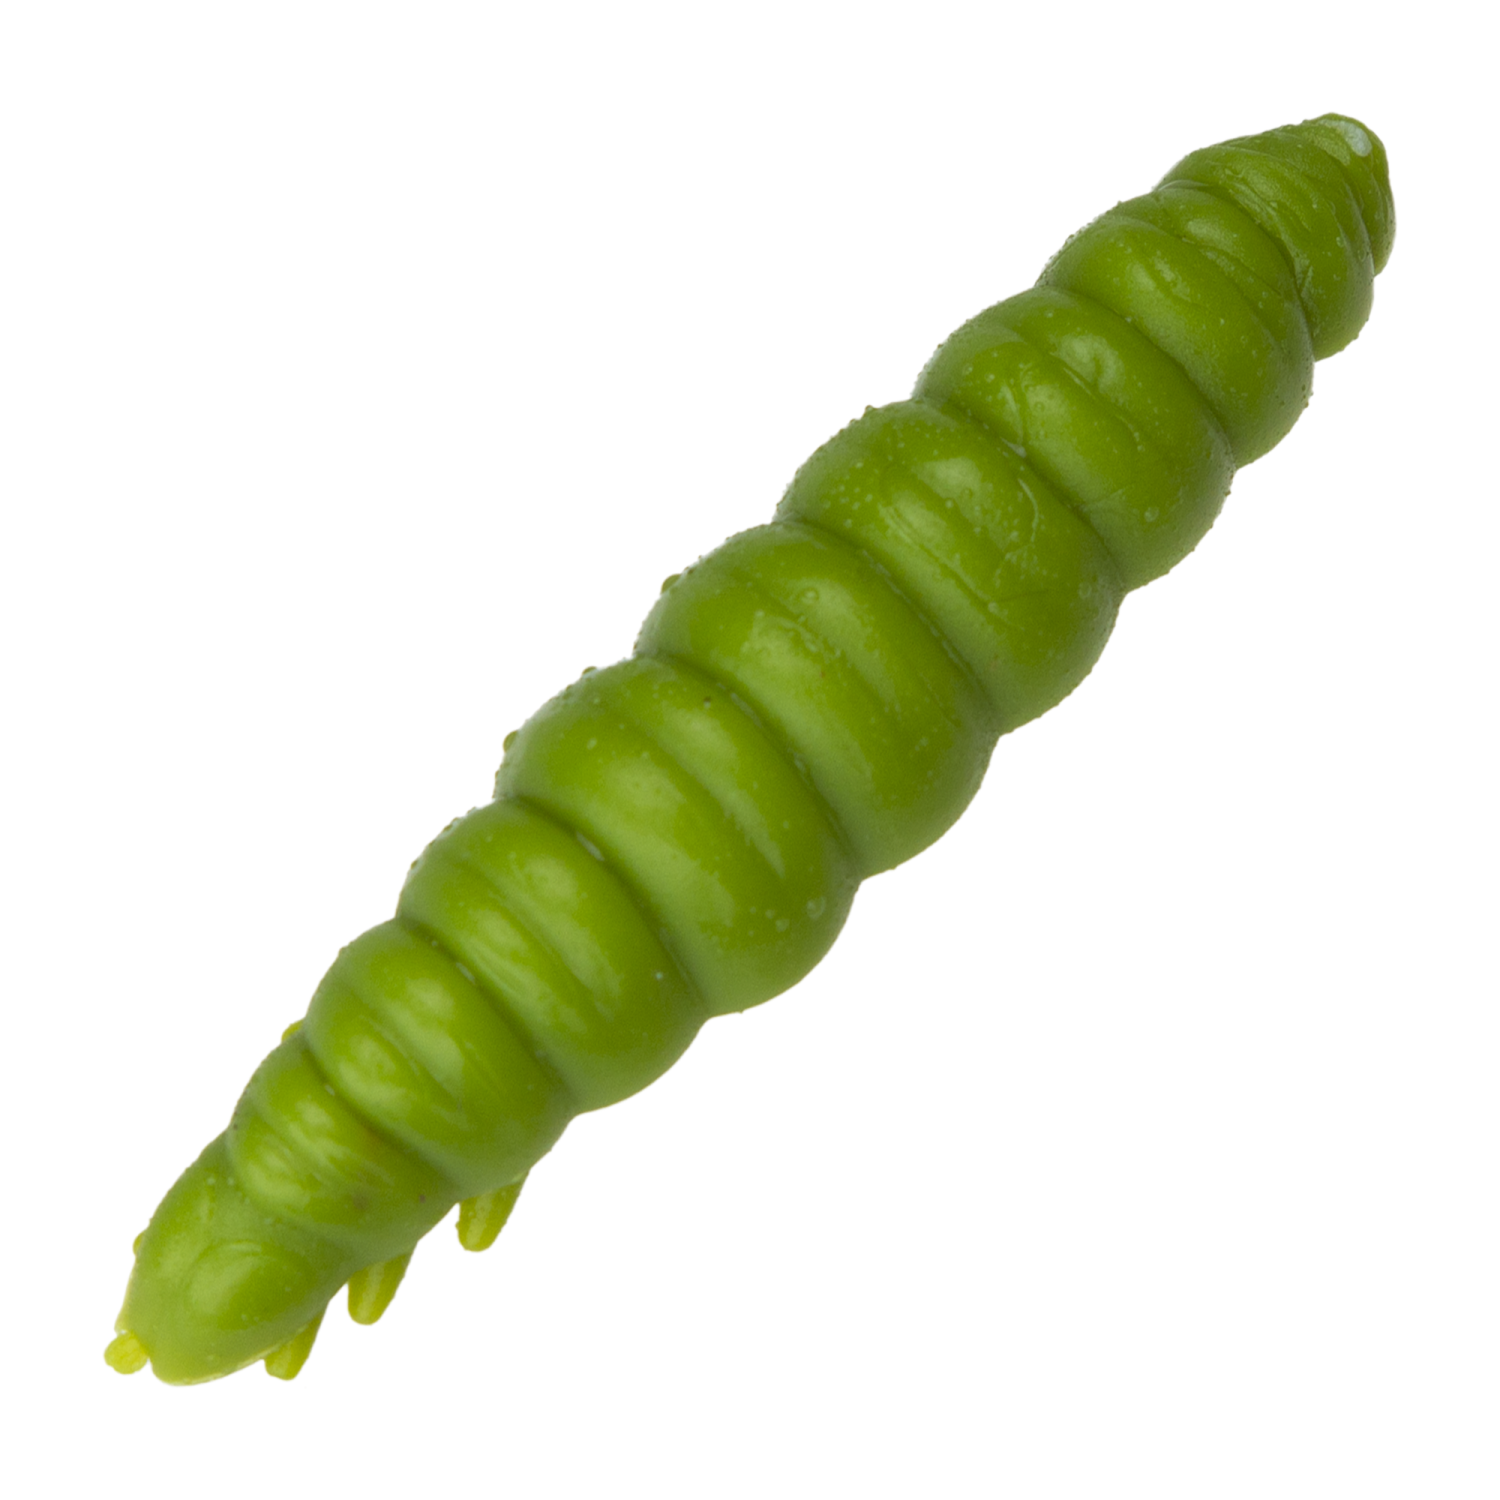 приманка силиконовая libra lures larva 45мм 1 8 cheese 000 glow uv green Приманка силиконовая Libra Lures Larva 45мм Cheese #031 Olive